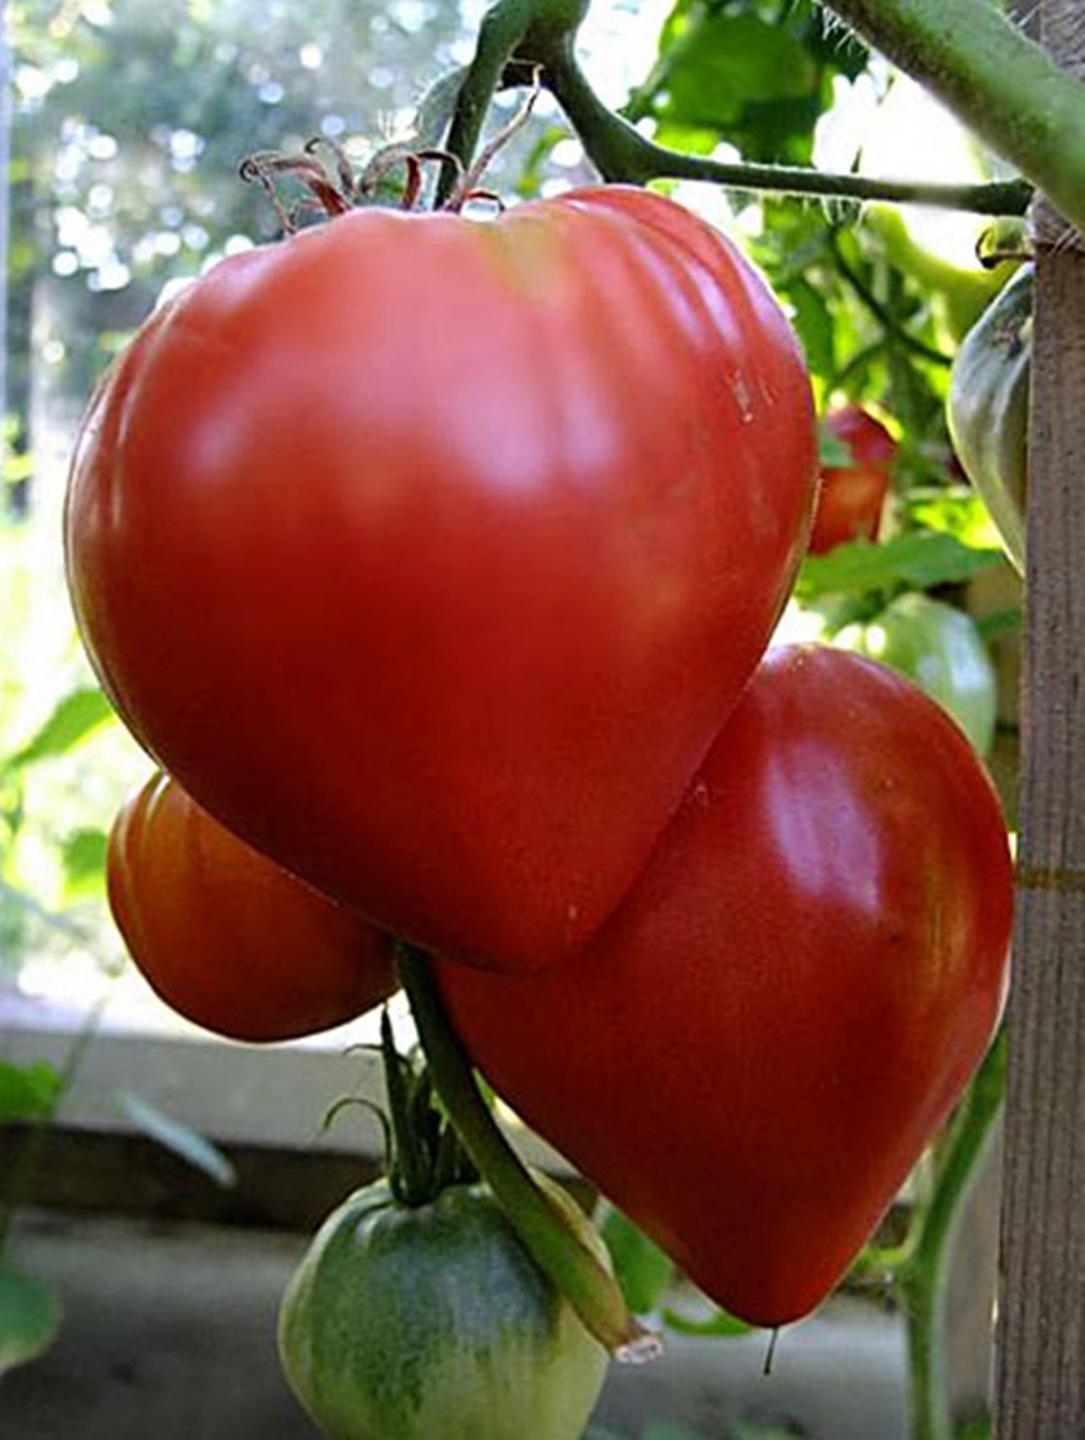 boğa kalbi domates sağlığı)